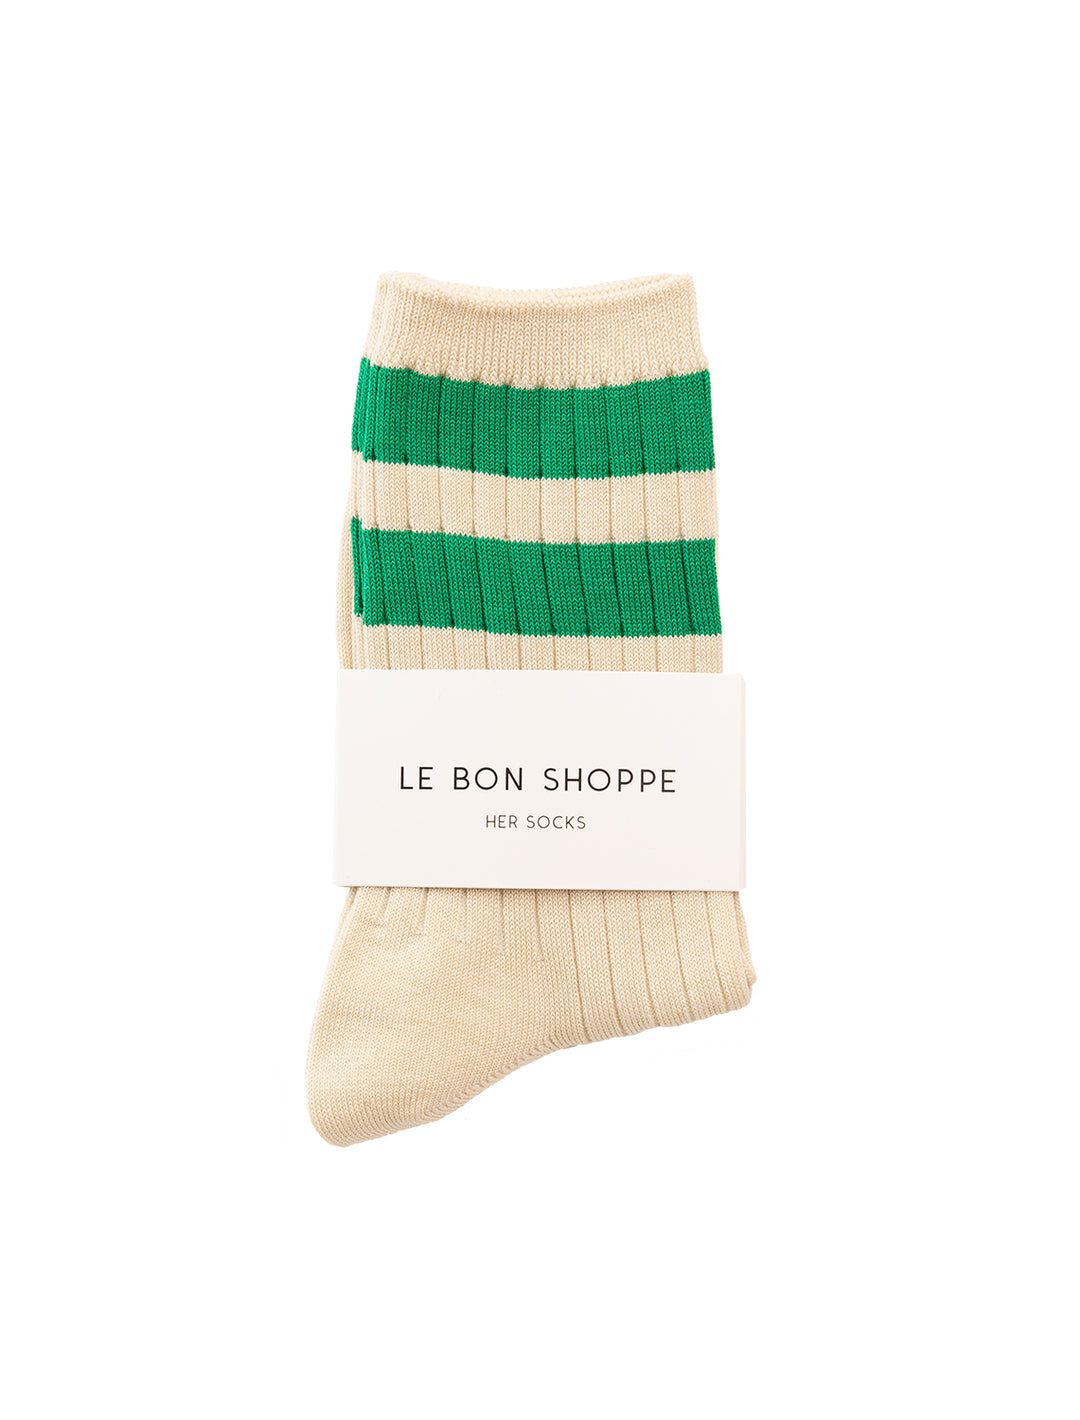 Le Bon Shoppe her socks - varsity in green